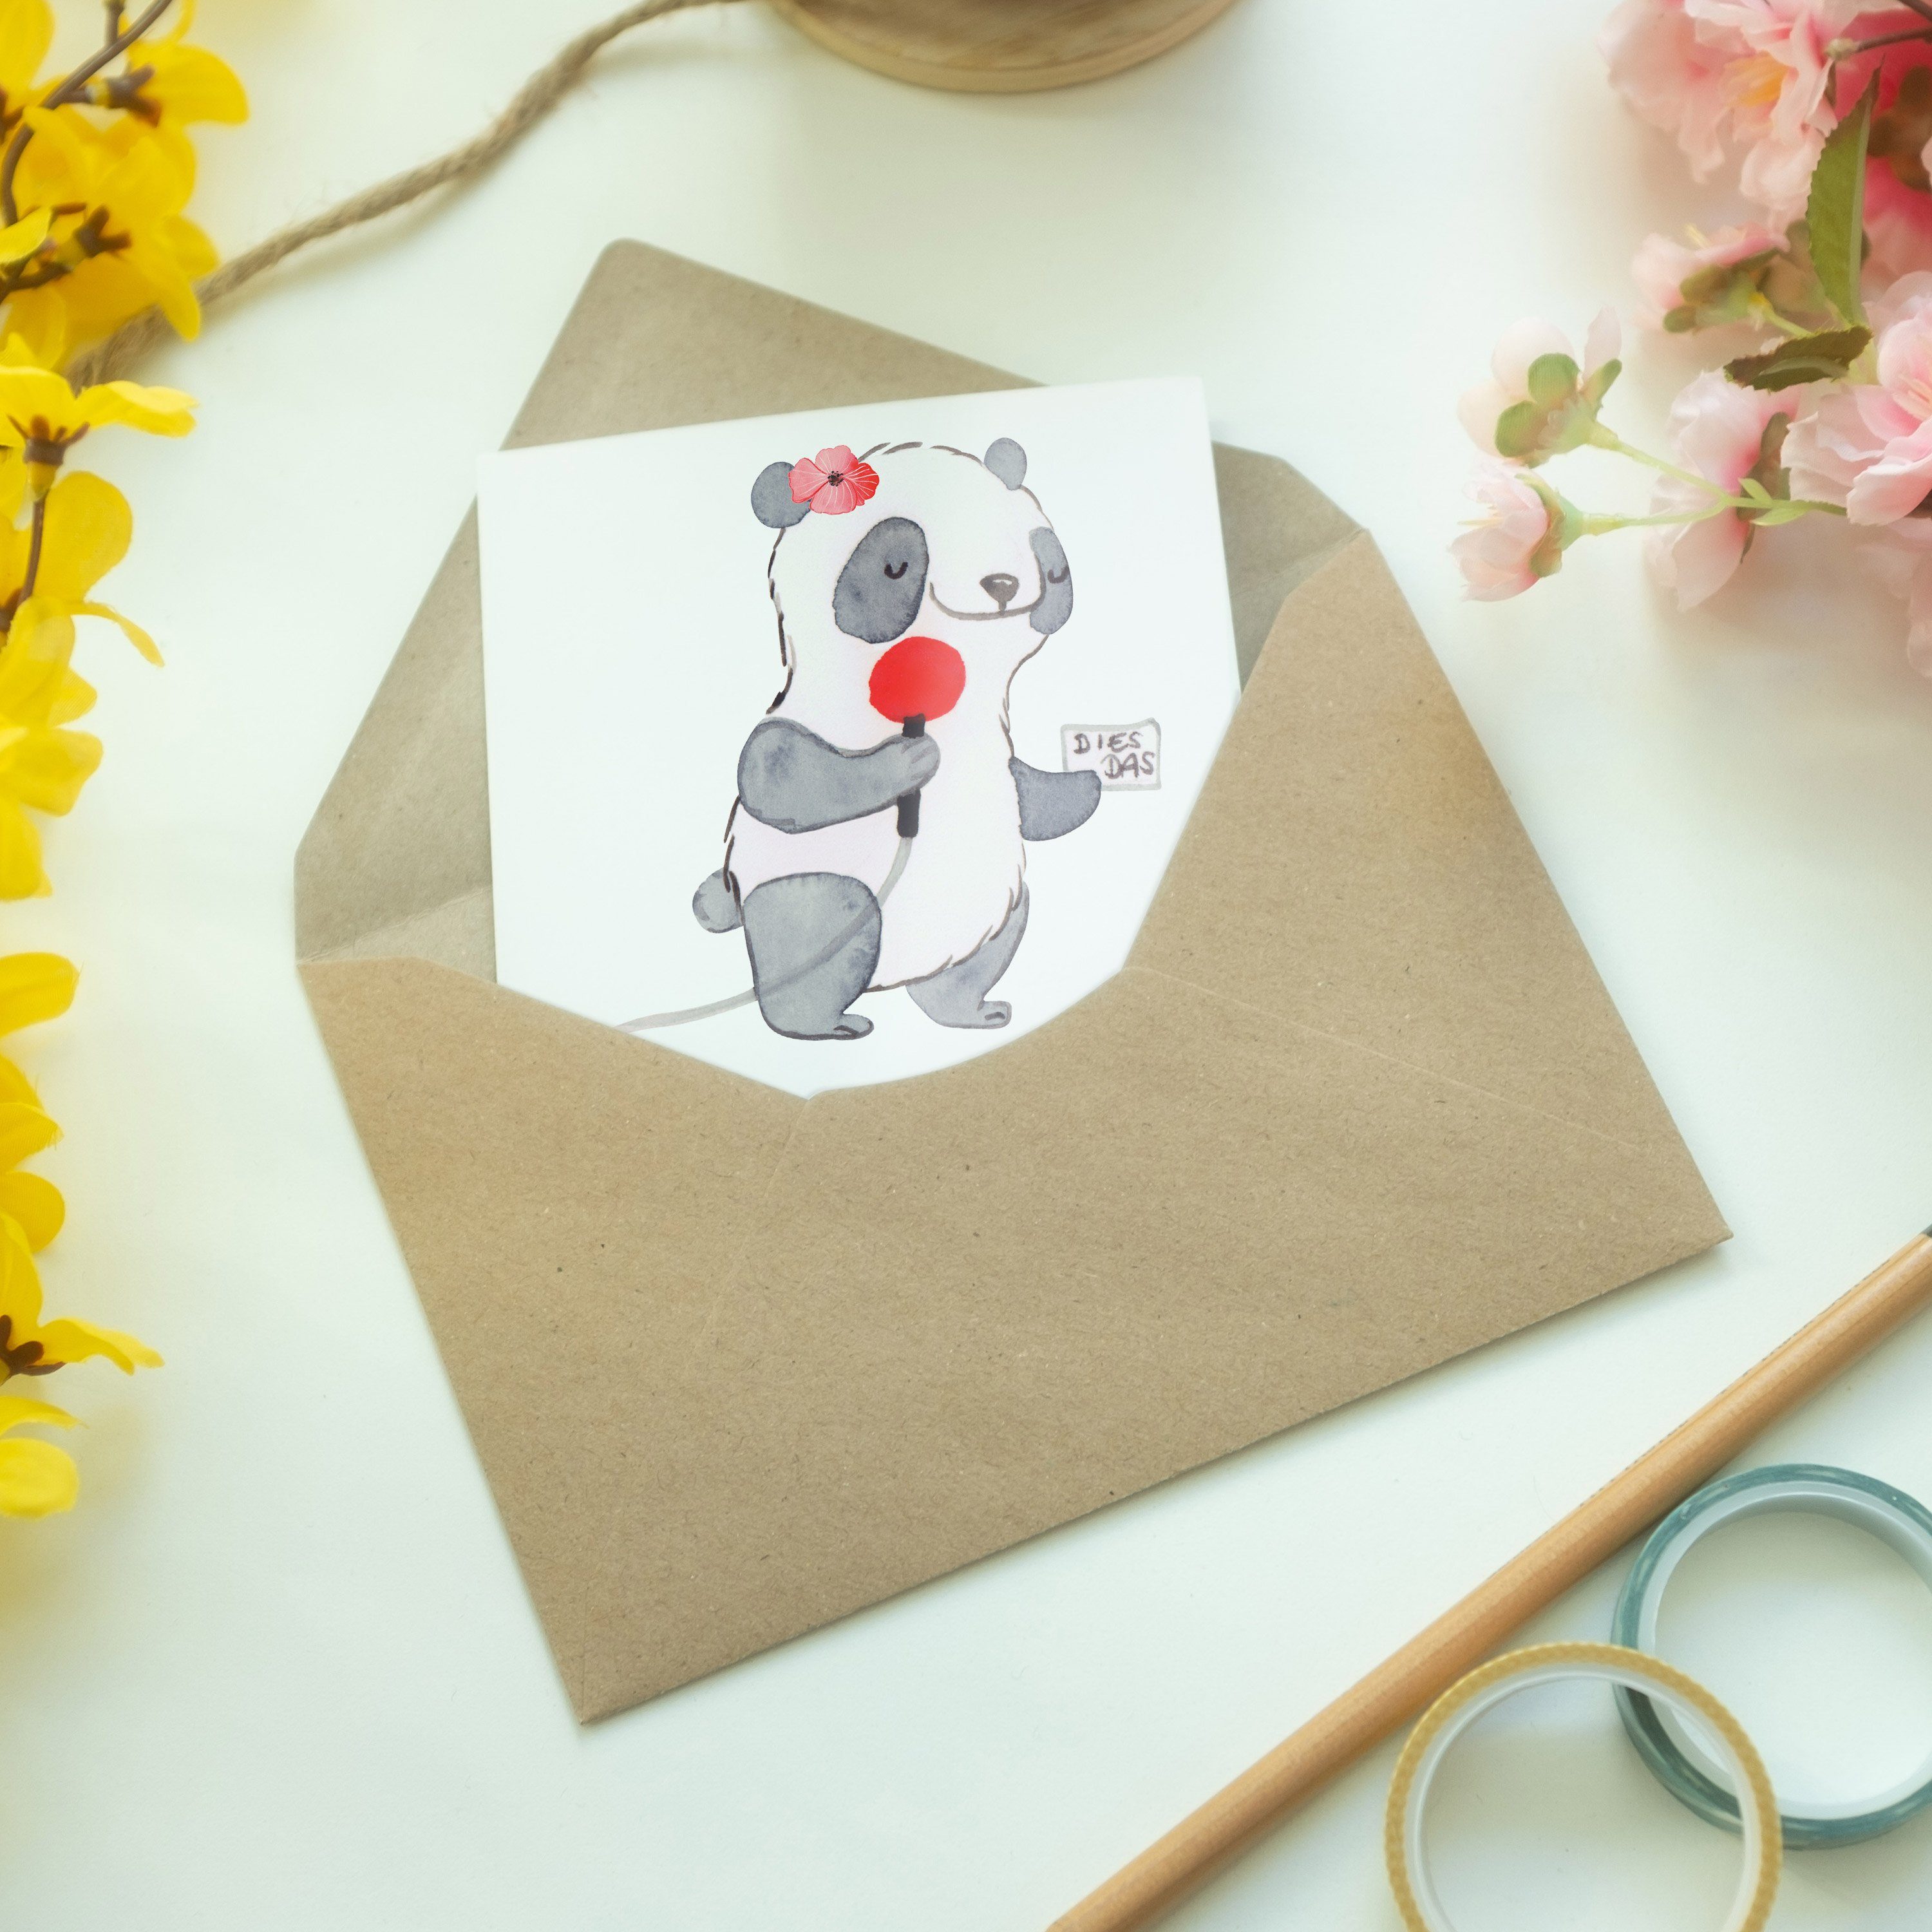 Panda - Hochzeitskarte, Herz Mrs. & - Schenken, Mr. Geschenk, mit Reporterin Dank Grußkarte Weiß